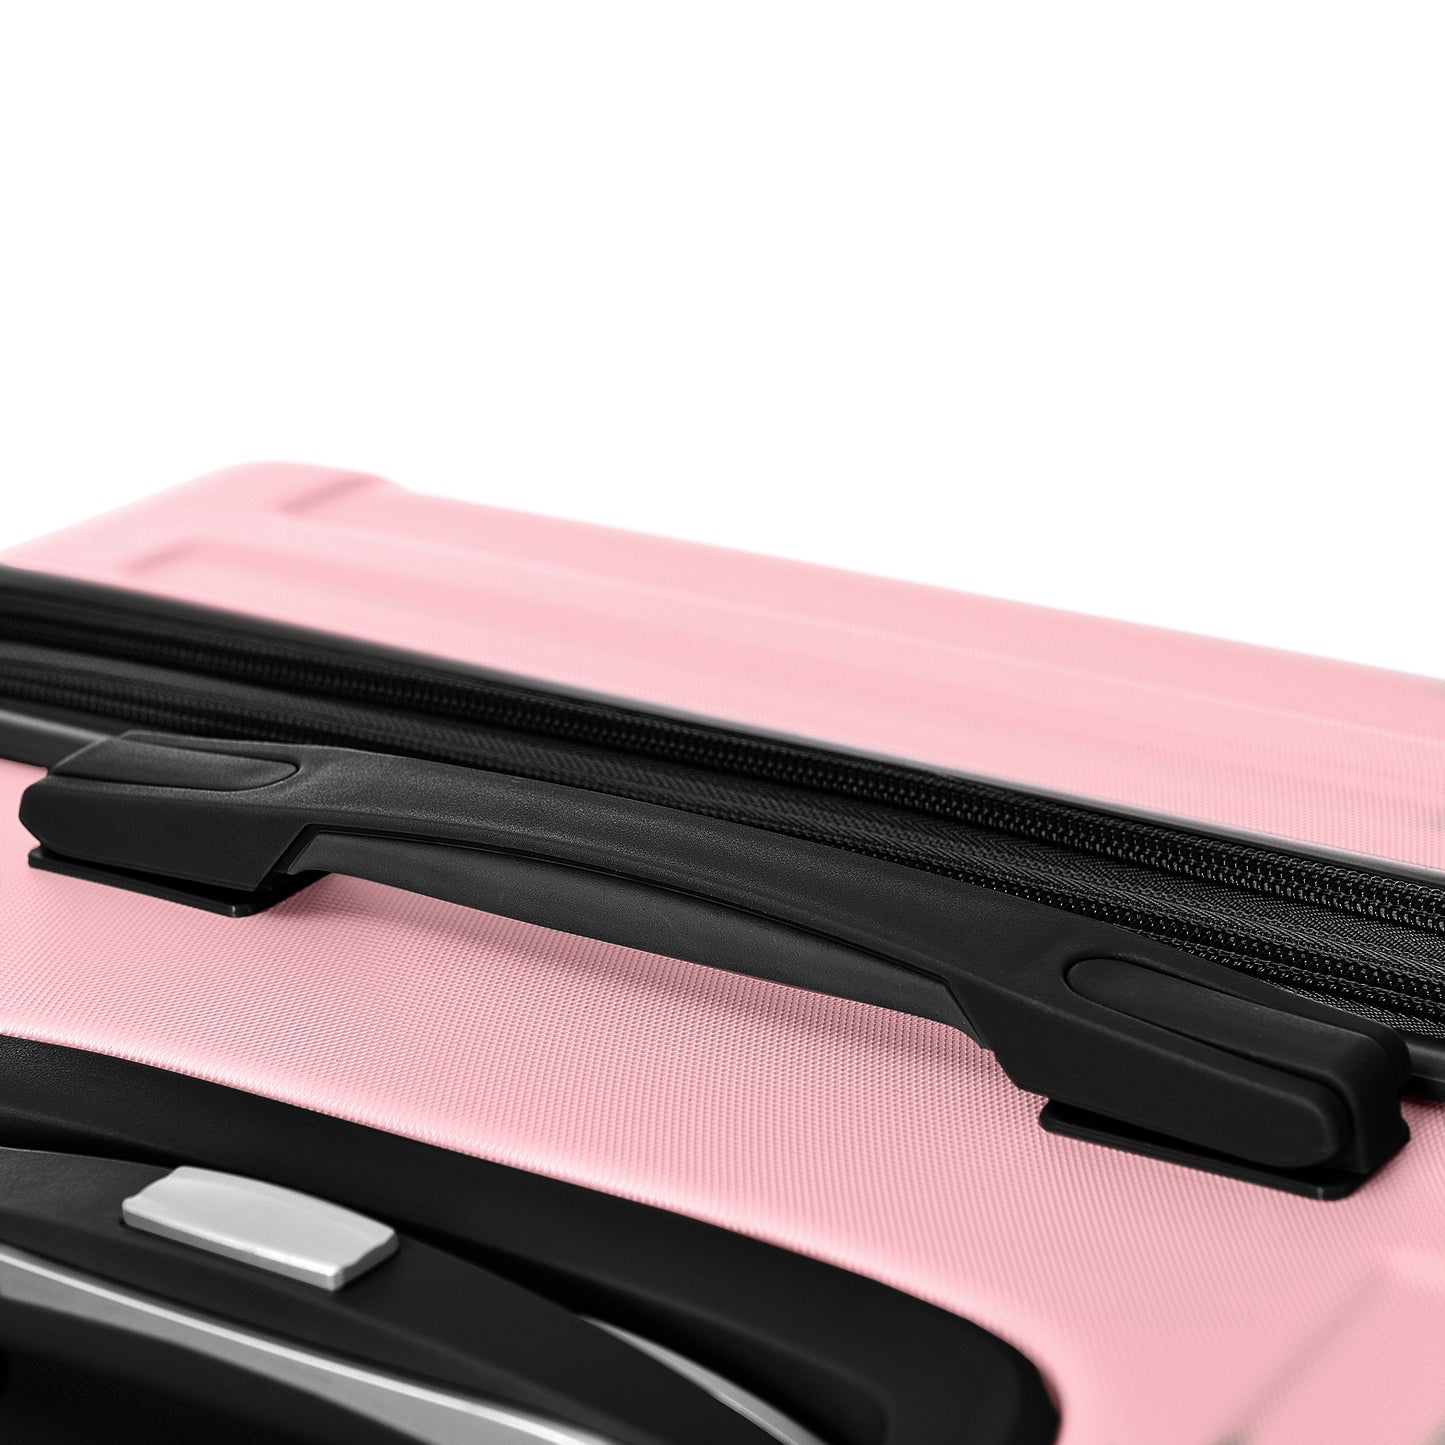 3Pc Hard Case Expandable Luggage Set (Pink)